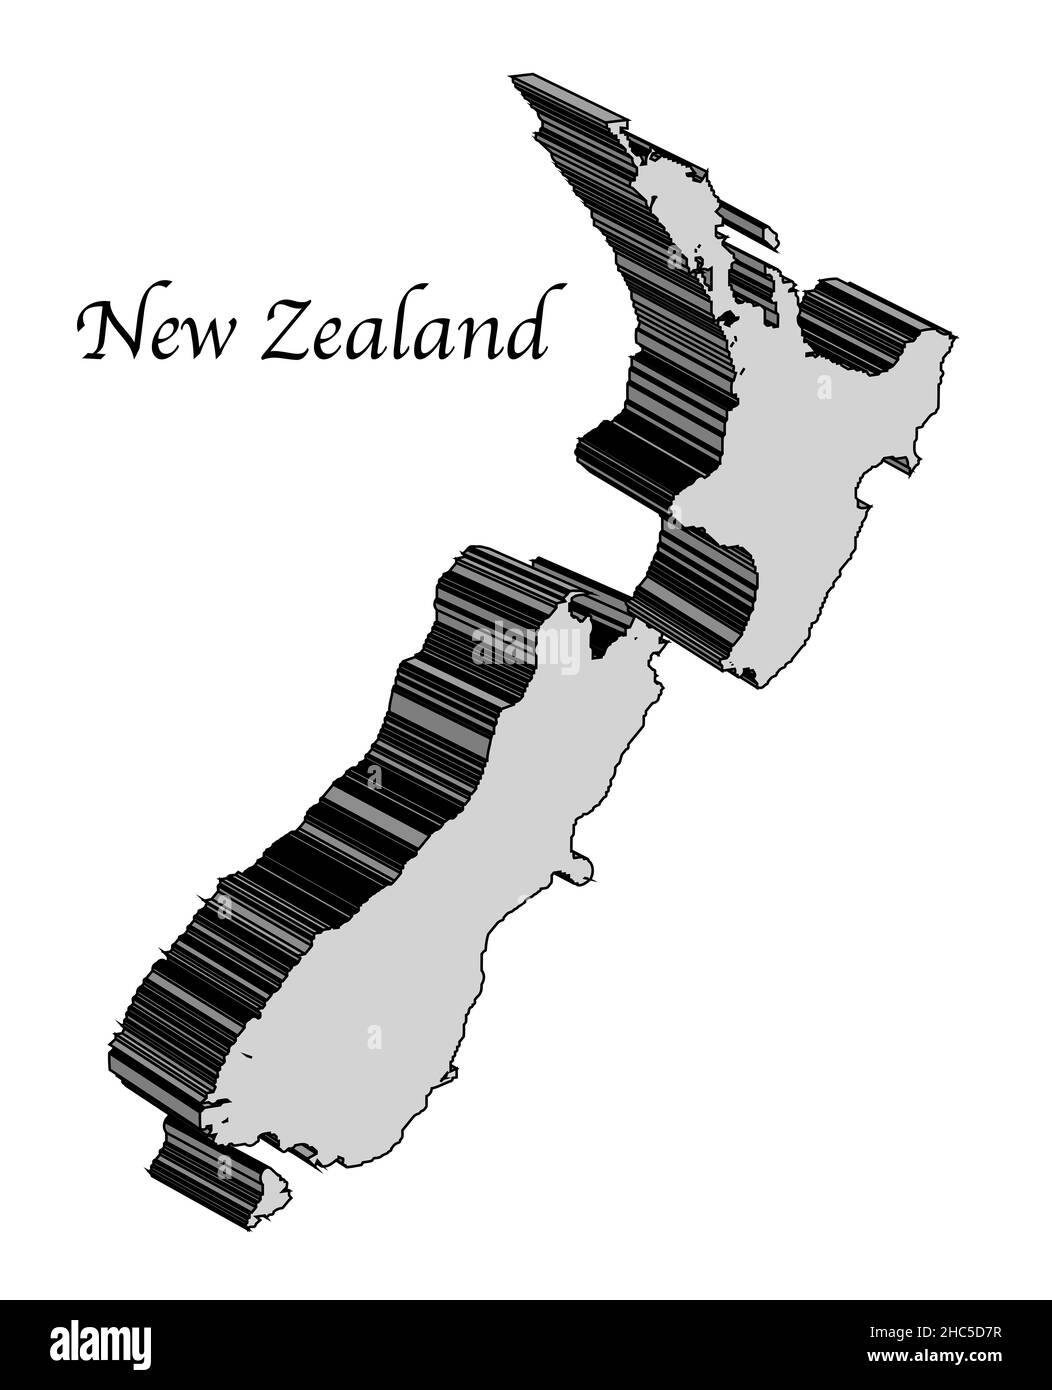 Plan 3D carte de la Nouvelle-Zélande sur fond blanc Banque D'Images